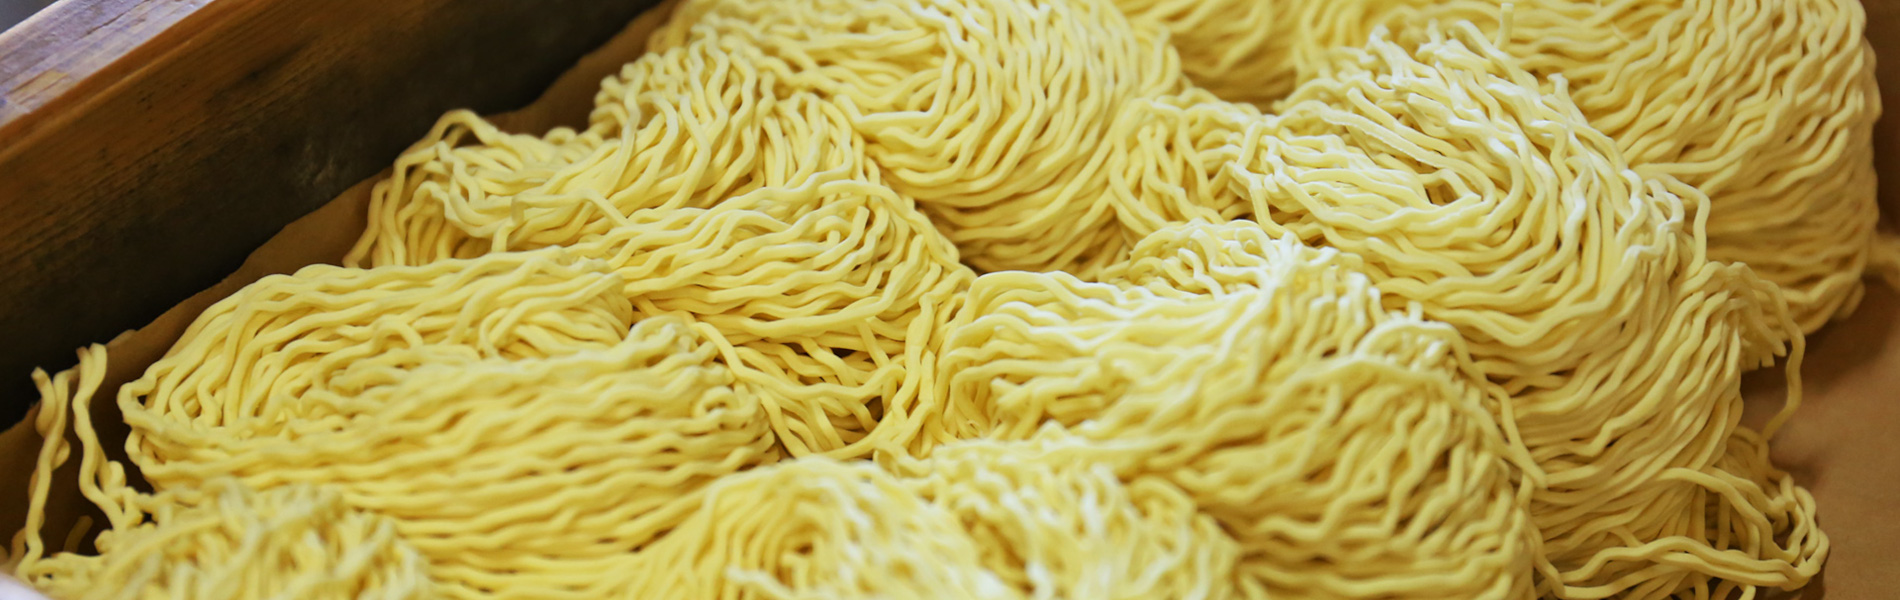 Noodle making